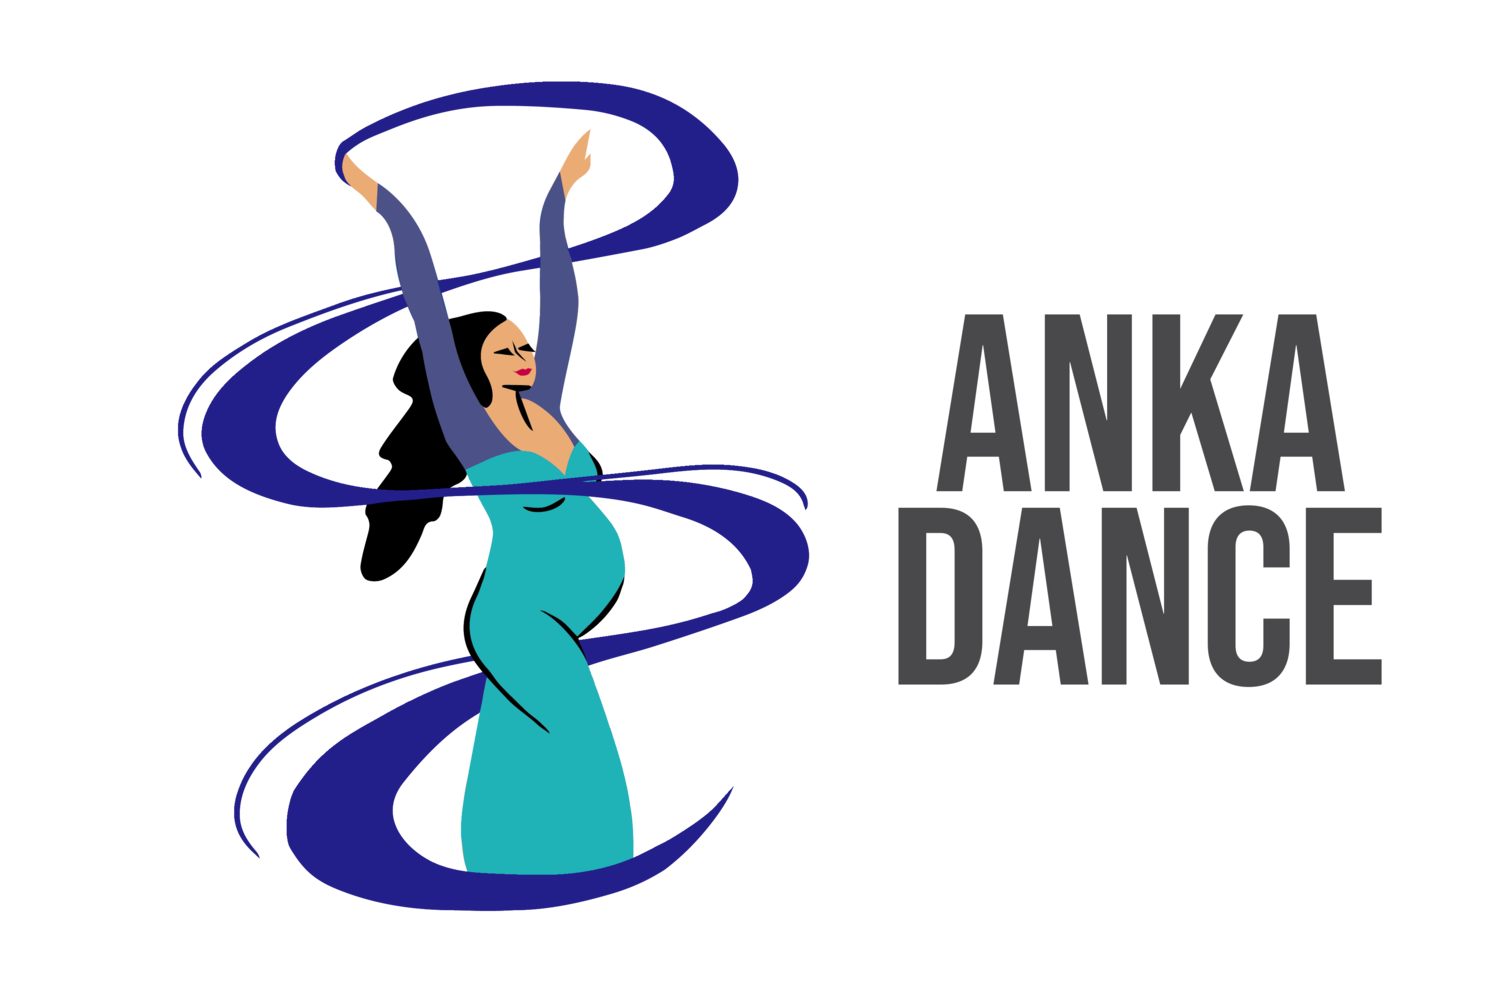 Anka Dance